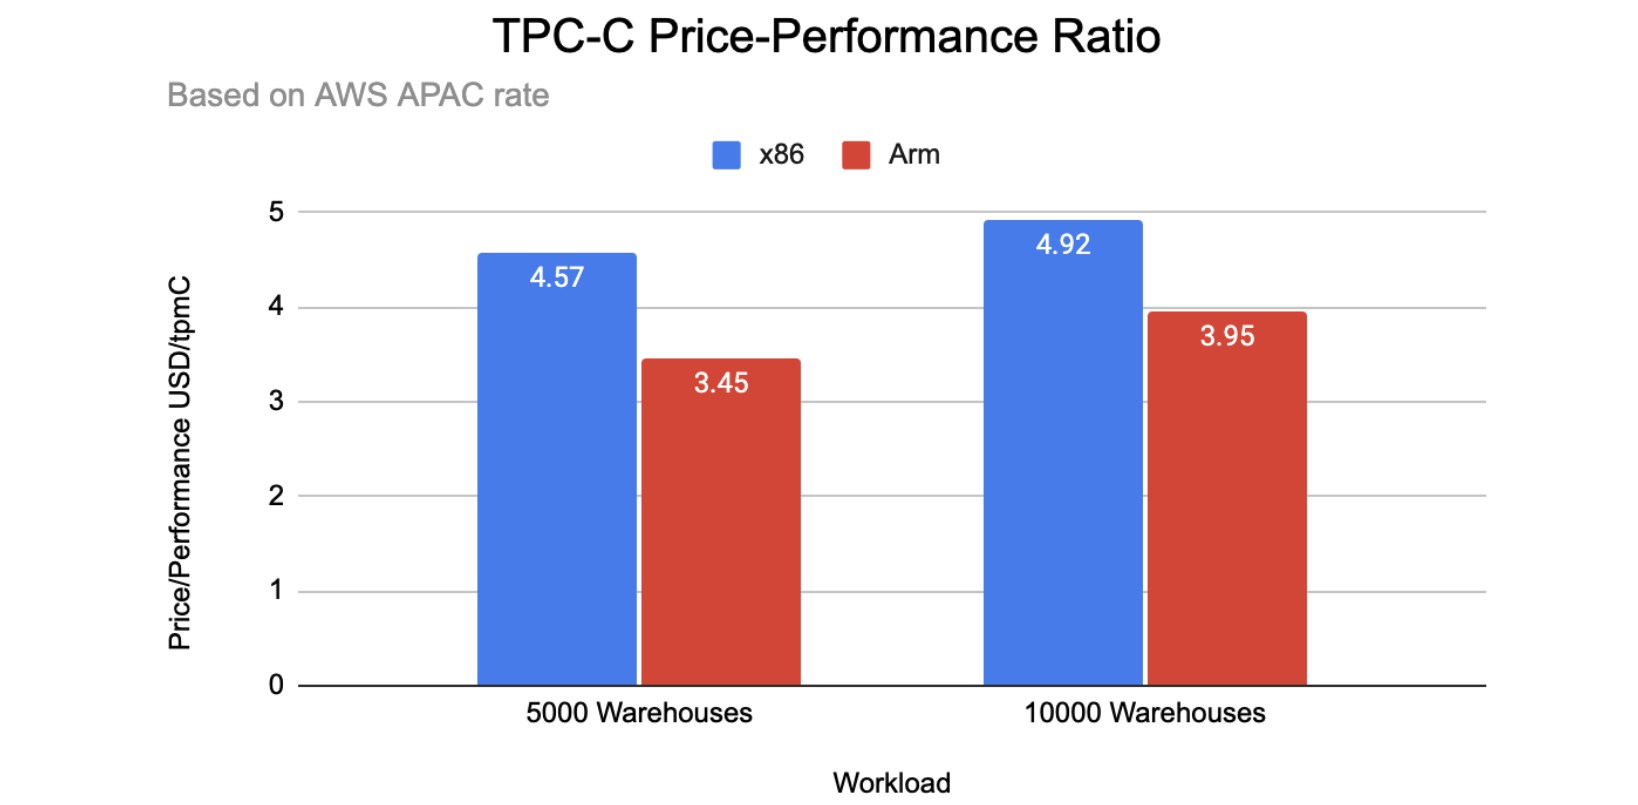 TPC-C price-performance ratio